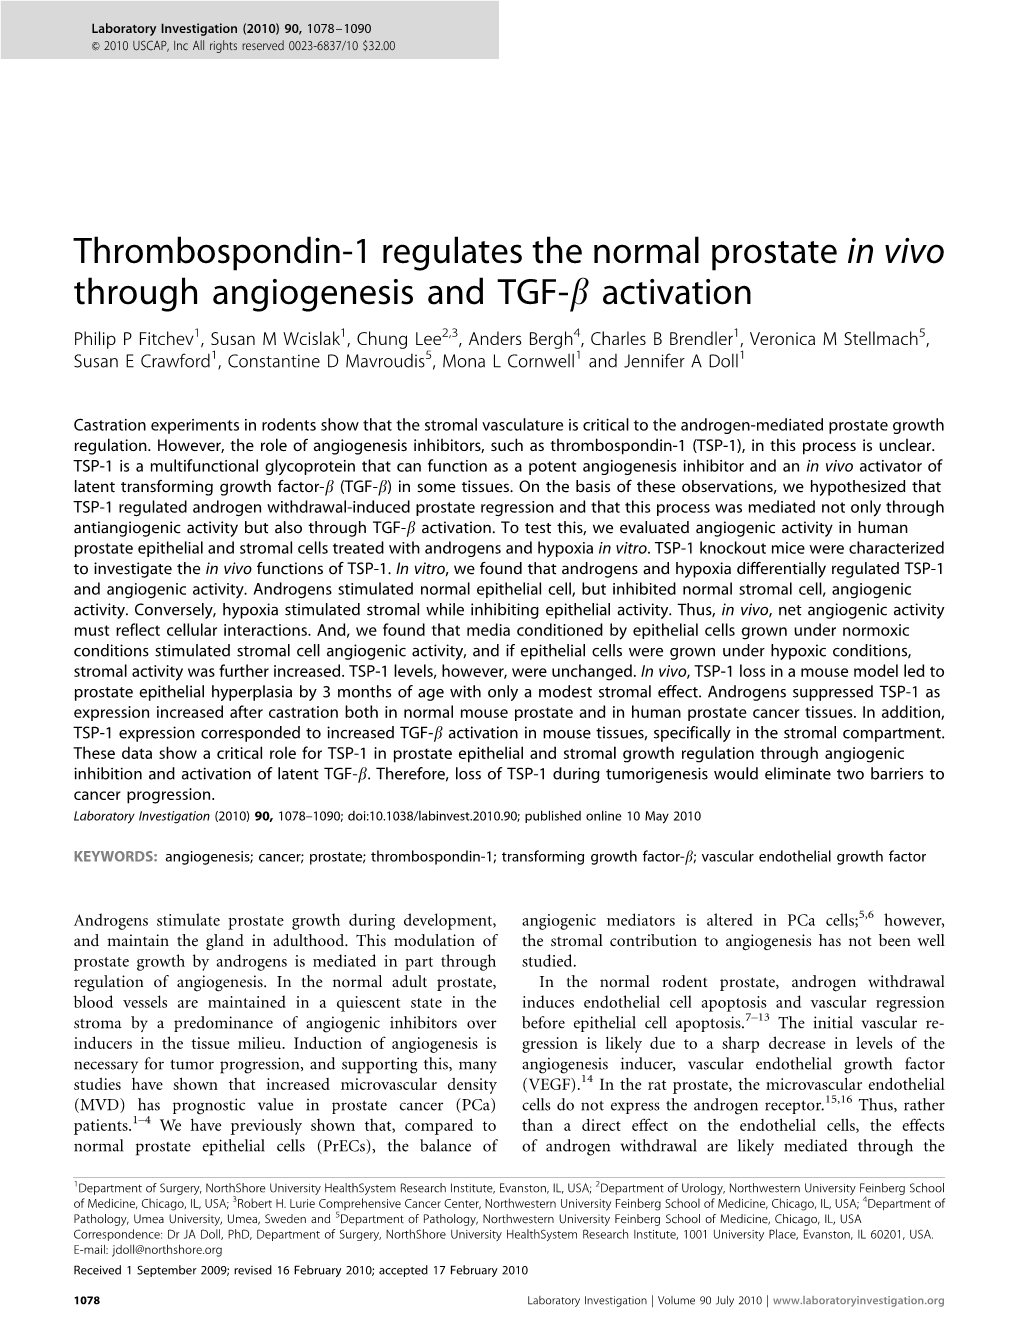 Thrombospondin-1 Regulates the Normal Prostate in Vivo Through